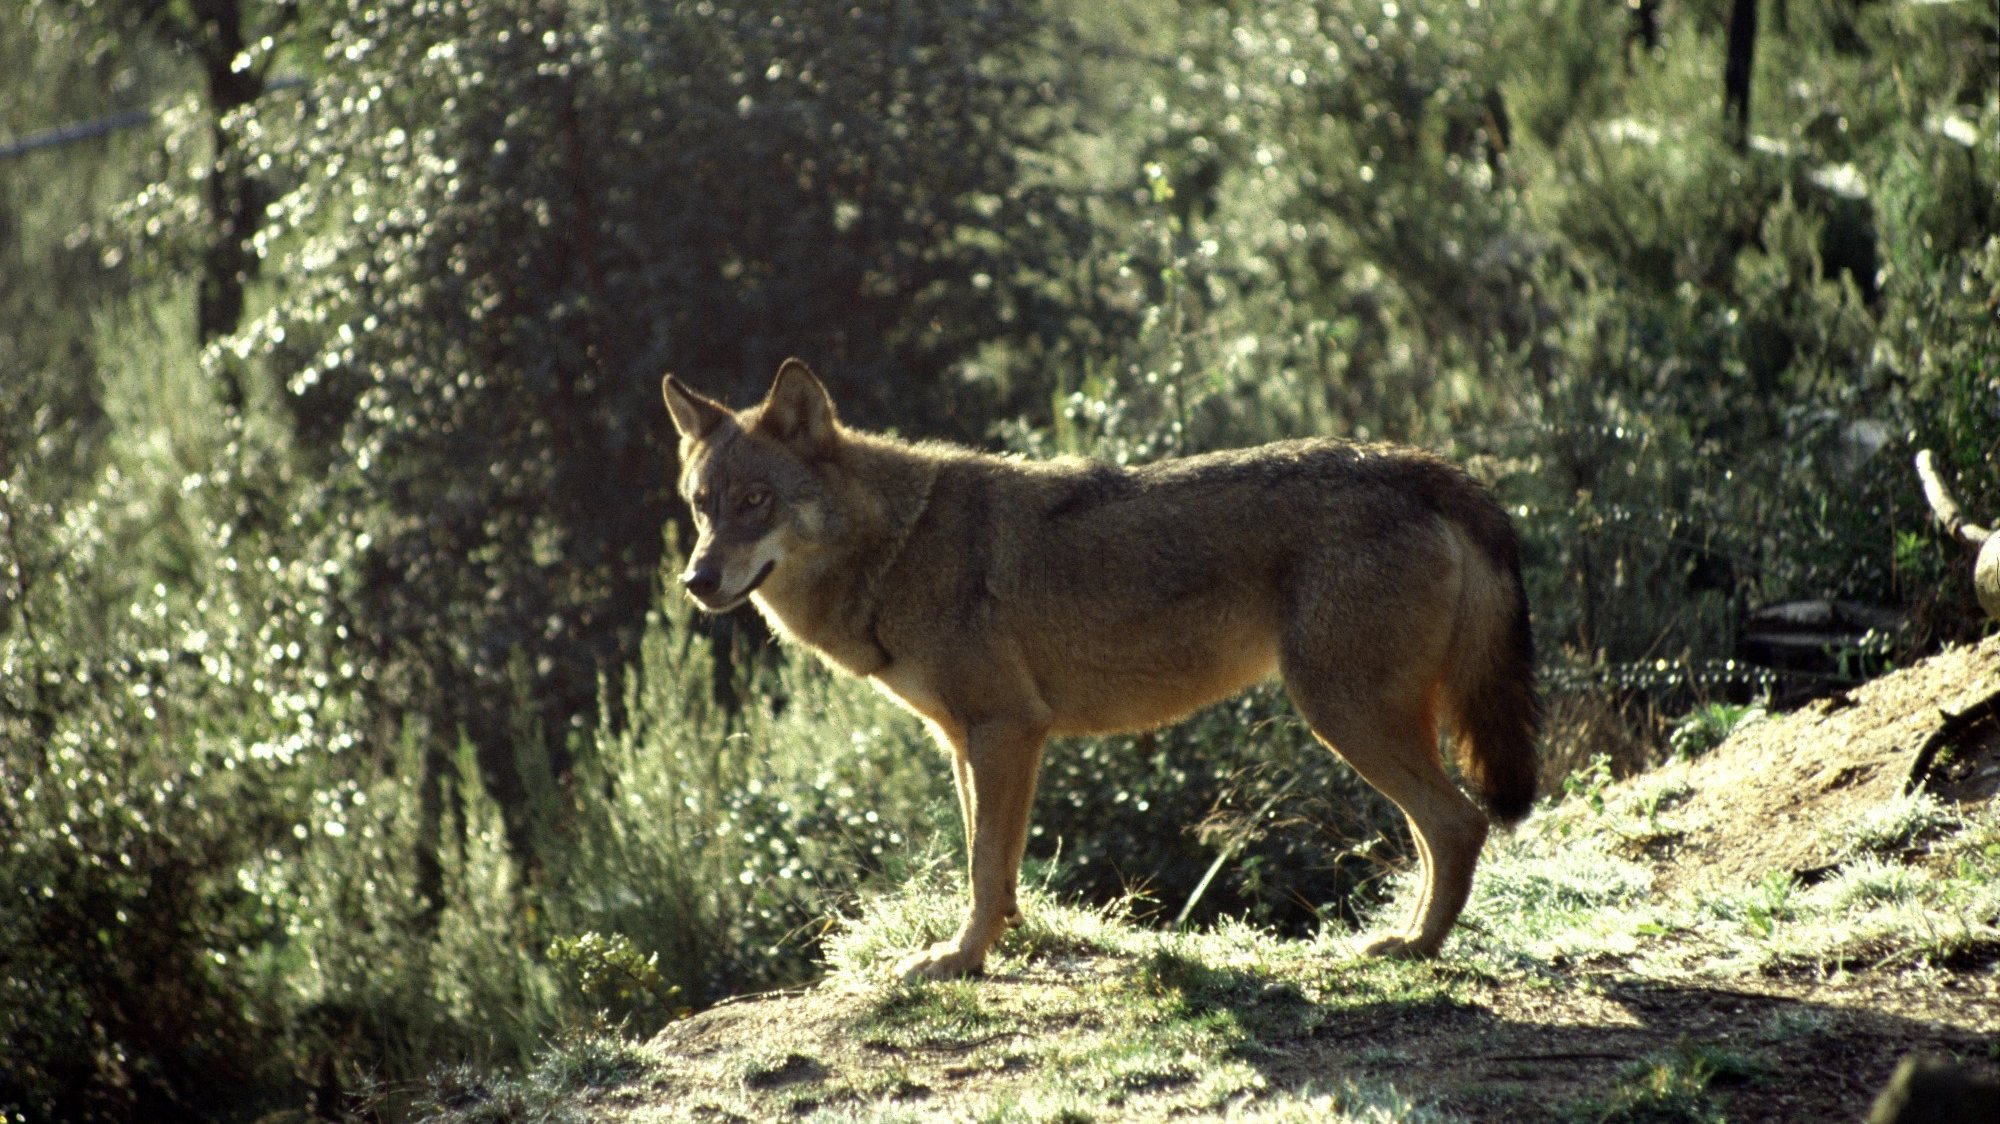 O Instituto da Conservação da Natureza e das Florestas (ICNF) lembra que em Portugal, &quot;o lobo-ibérico (Canis lupus signatus) é, desde 1989, uma espécie estritamente protegida, quer por via de legislação europeia (Convenção de Berna e Diretiva Habitats), quer por via de legislação nacional (Lei nº90/88, de 27 de abril e Decreto-Lei nº54/2016, de 25 de agosto)&quot;